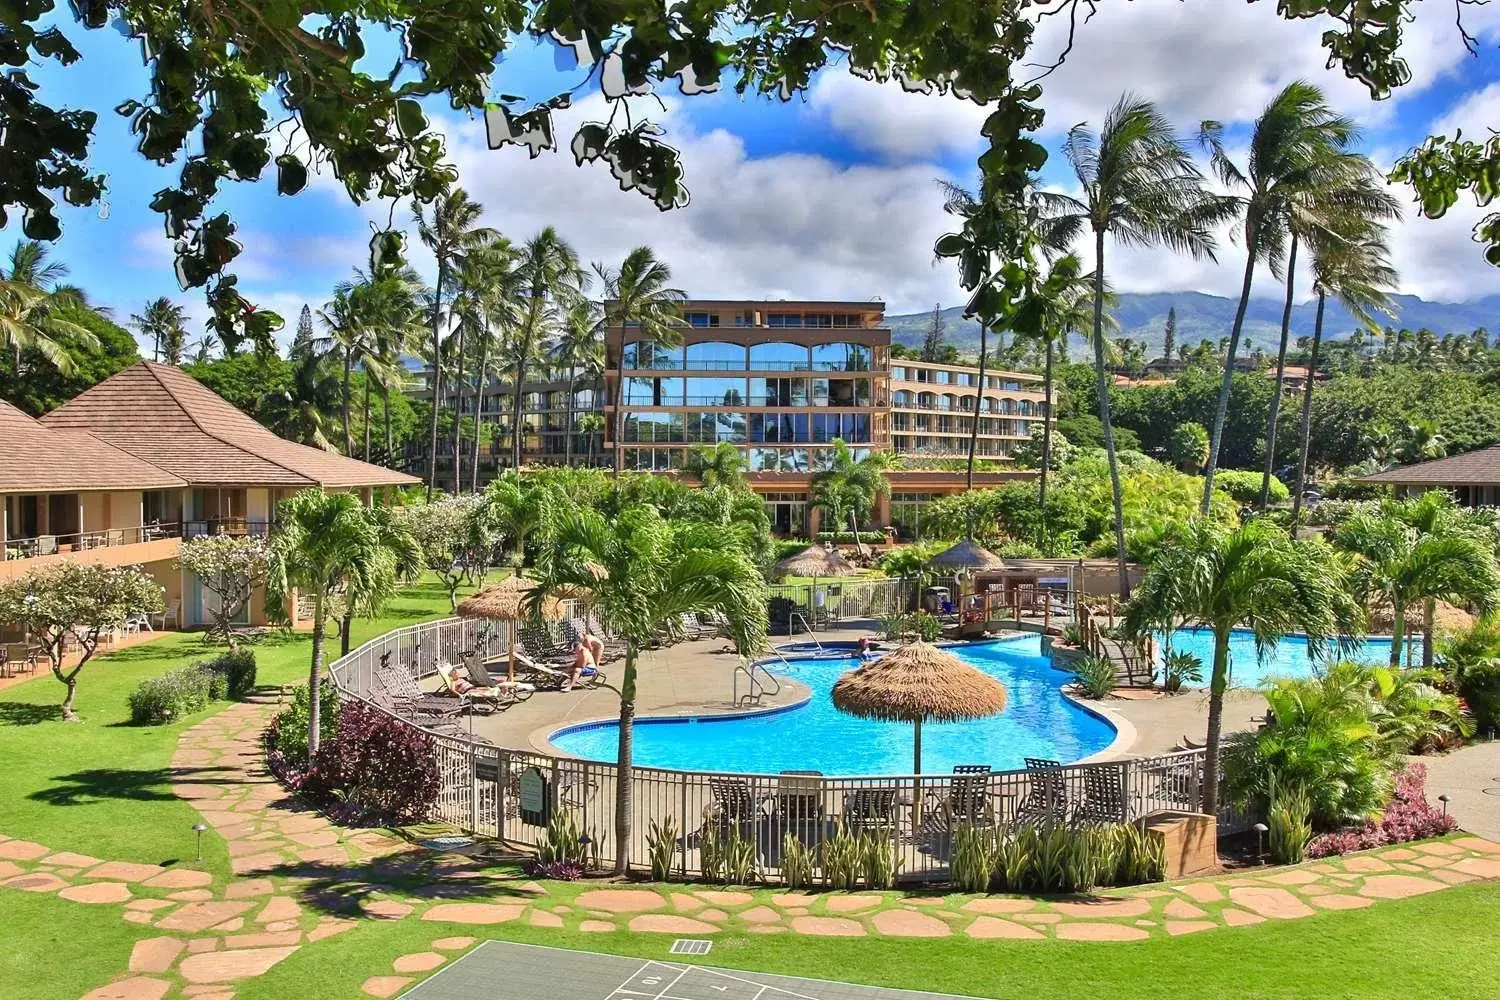 Garden, Pool View in Aston Maui Kaanapali Villas